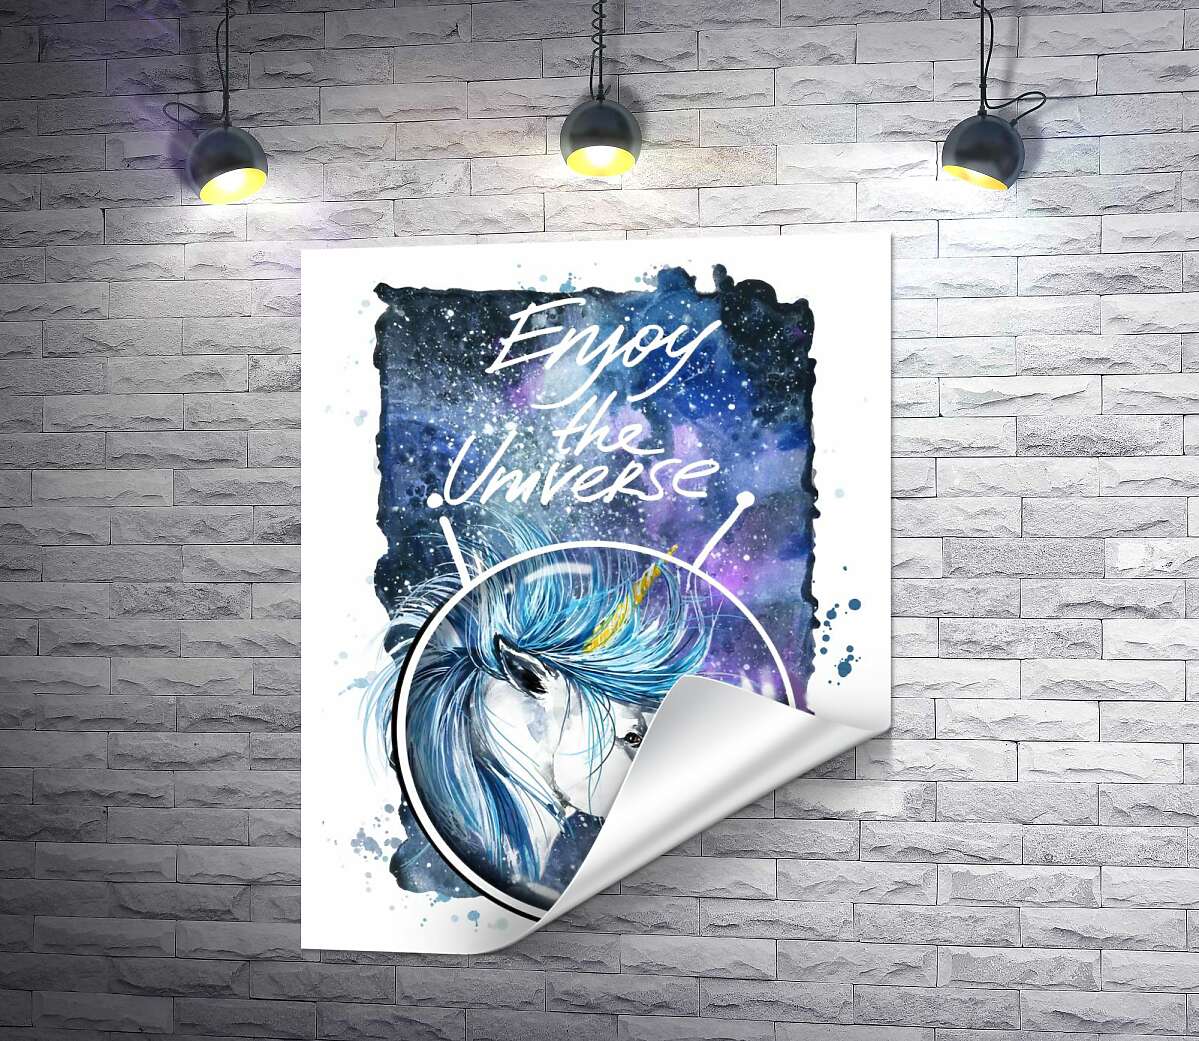 друк Блакитна грива єдинорога розвівається в космічному просторі поряд з написом "Enjoy the Universe"